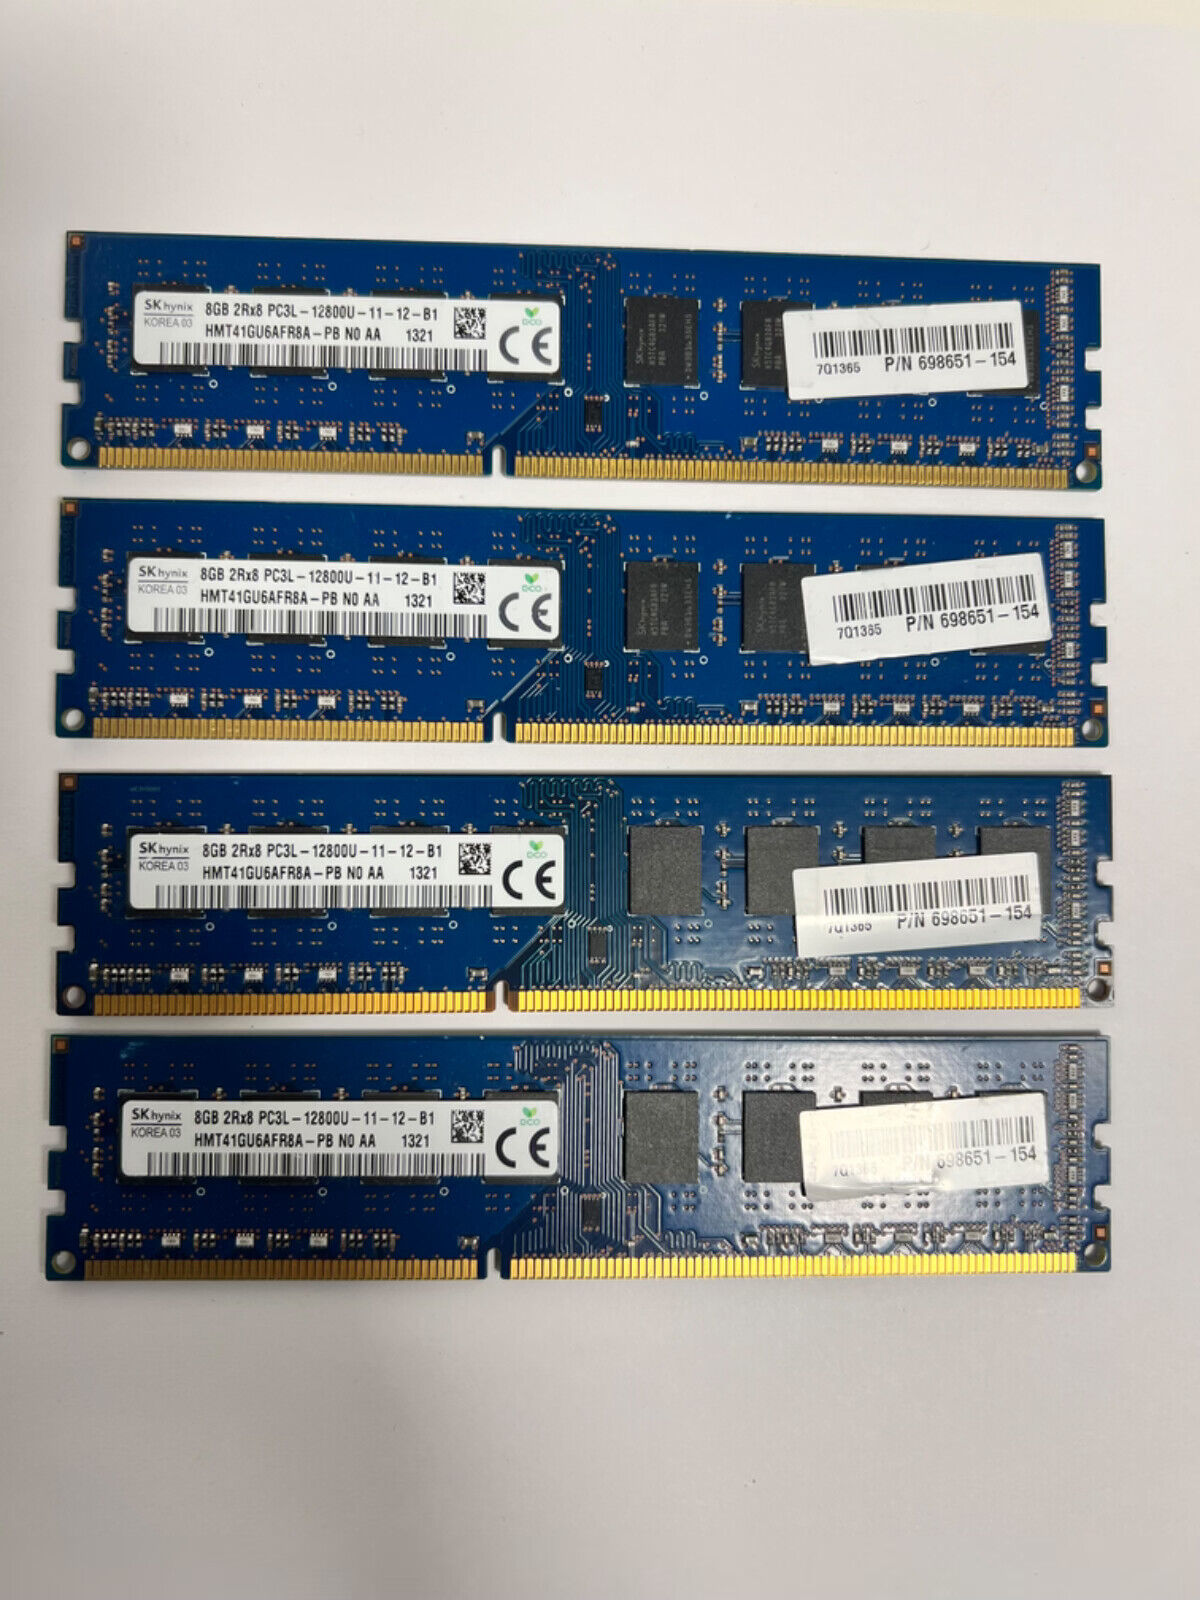 SK Hynix 32GB (4x8GB) PC3L-12800u DDR3-1600MHz 2Rx8 Non-ECC HMT41GU6AFR8A-PB HVD